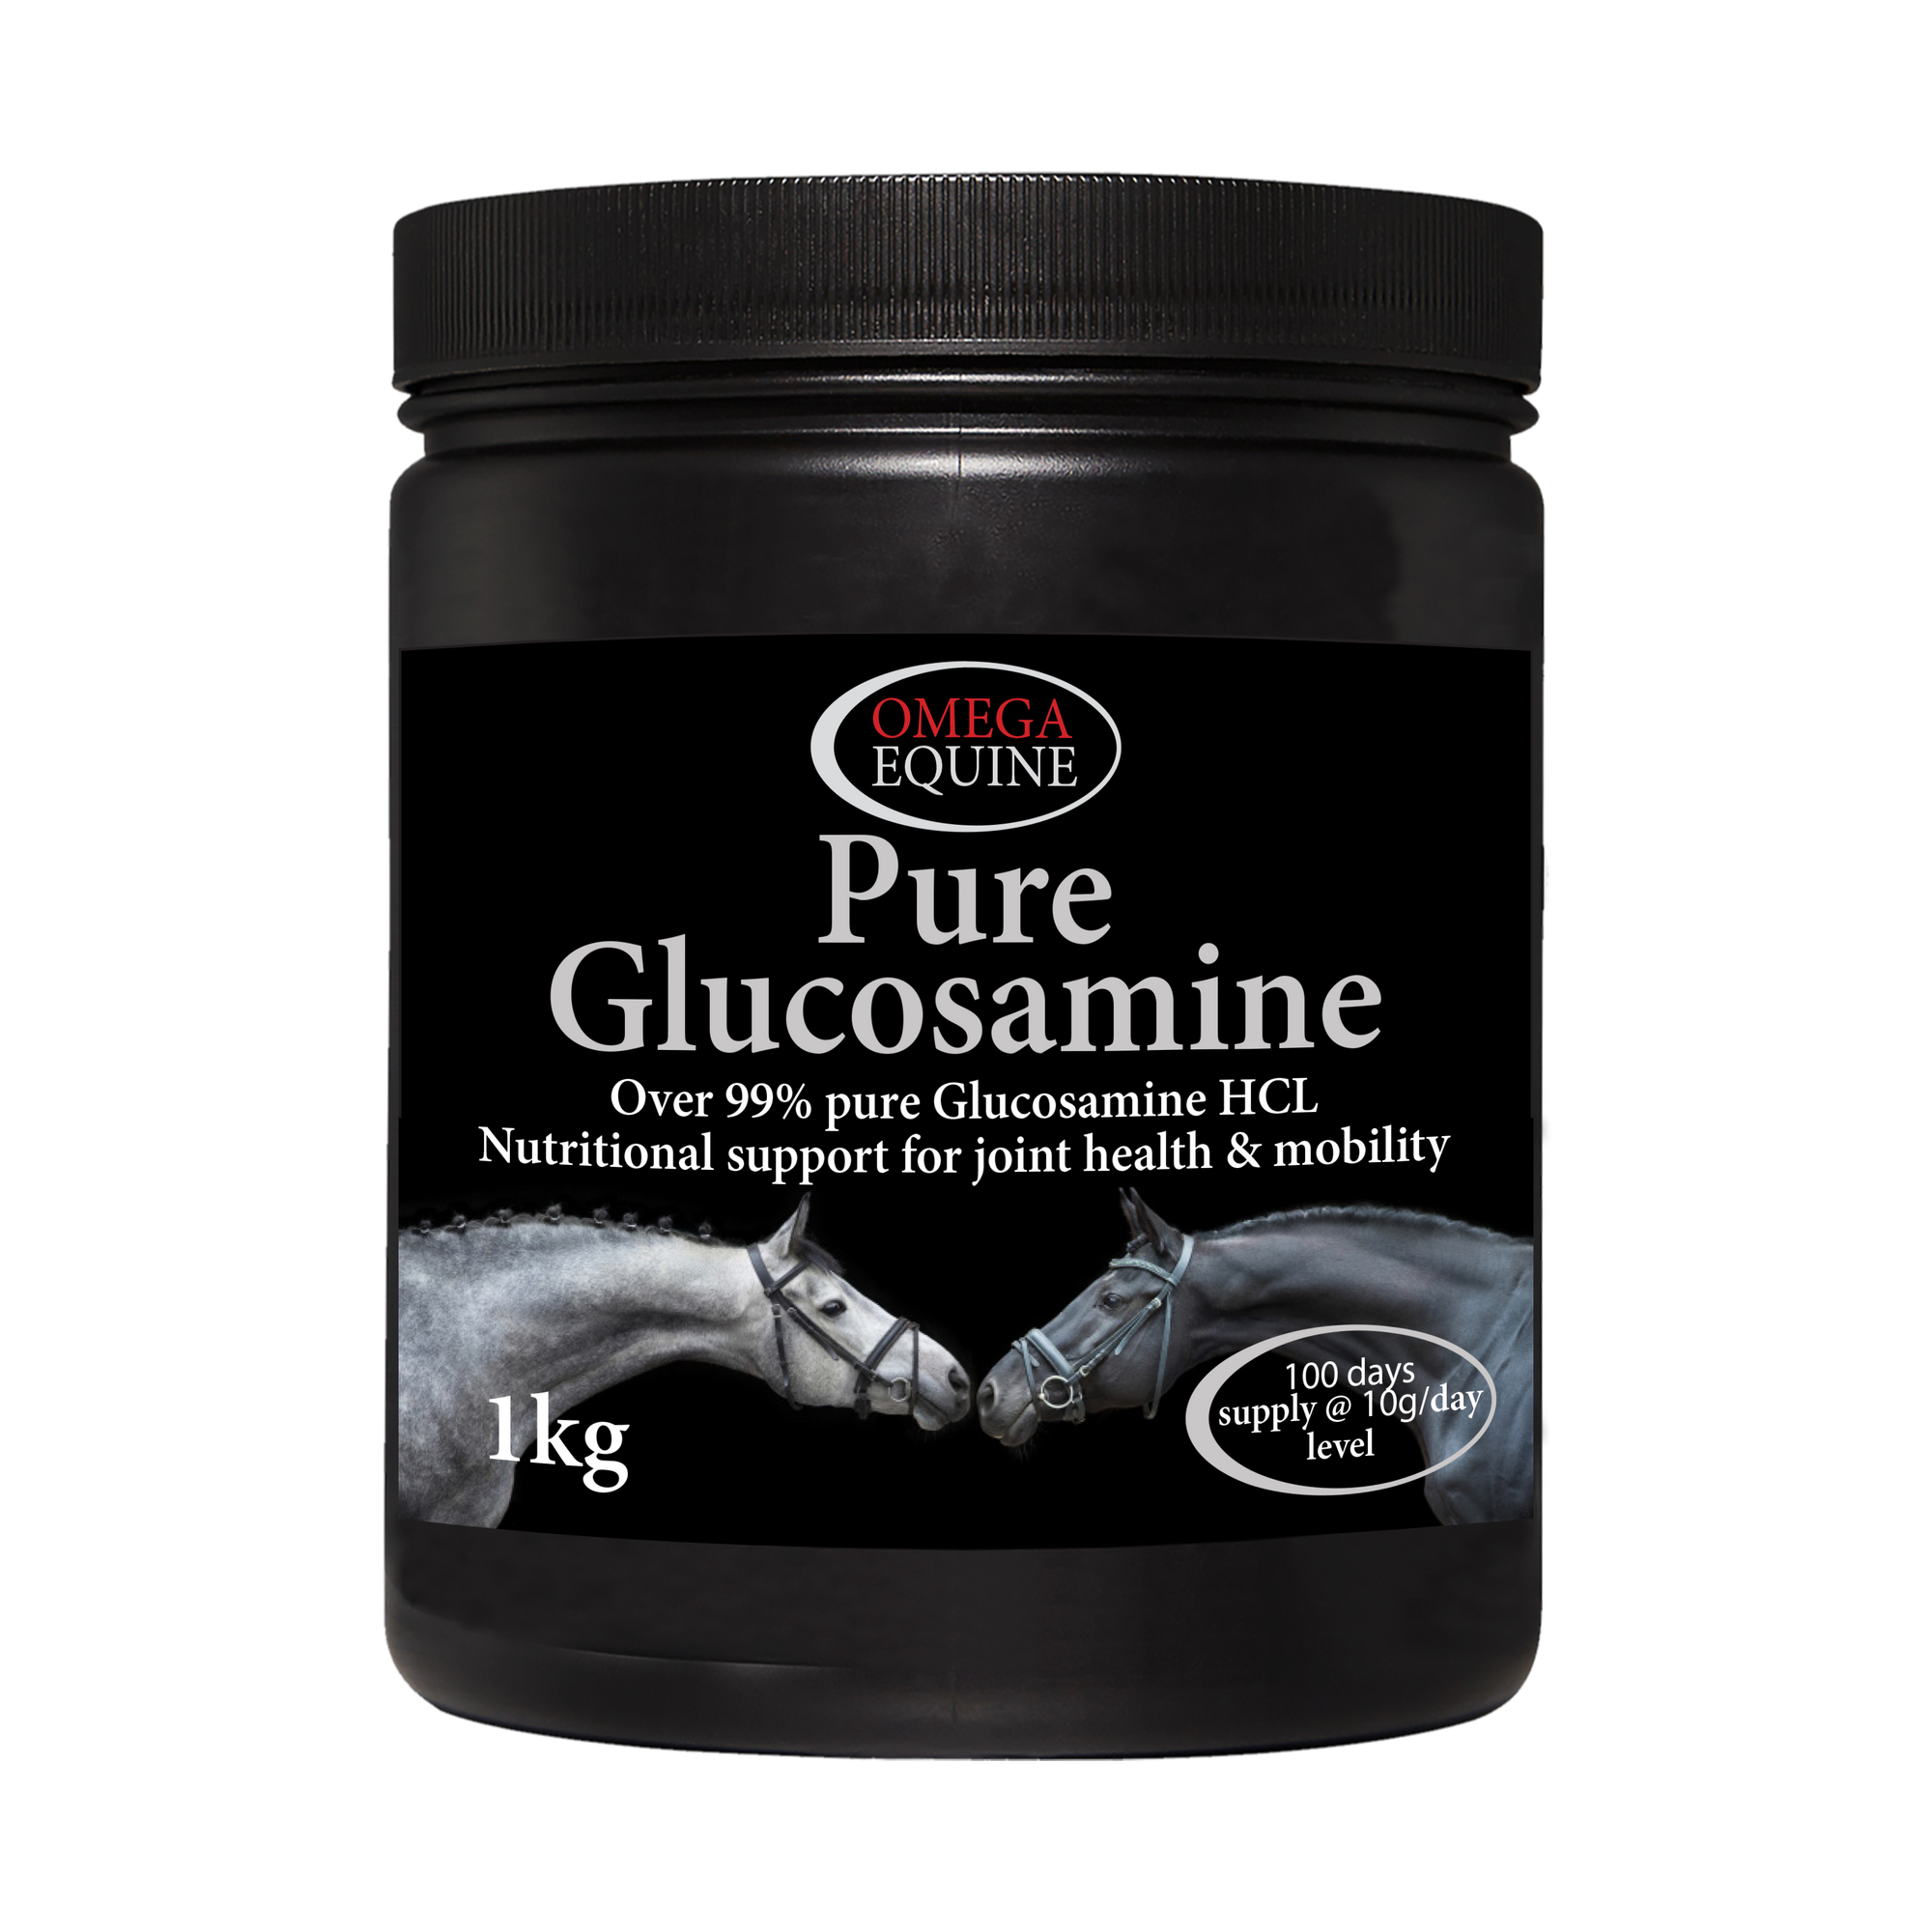 Omega Pure Glucosamine